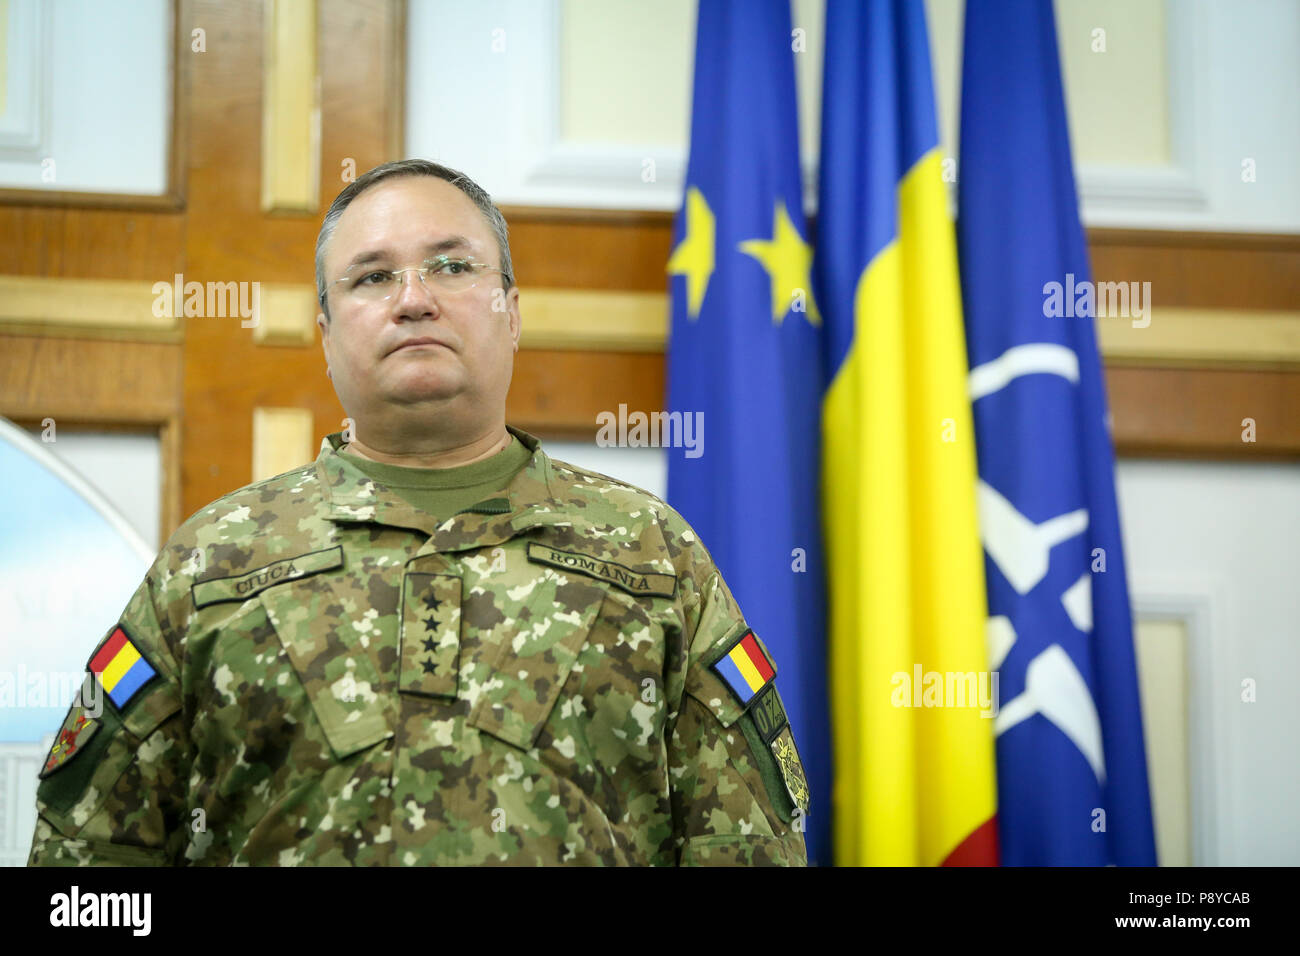 Bucarest, Romania - 13 Luglio: Generale Nicolae Ciuca, capo del rumeno generale dello staff, prende parte a un briefing con la stampa, il 13 luglio. Foto Stock